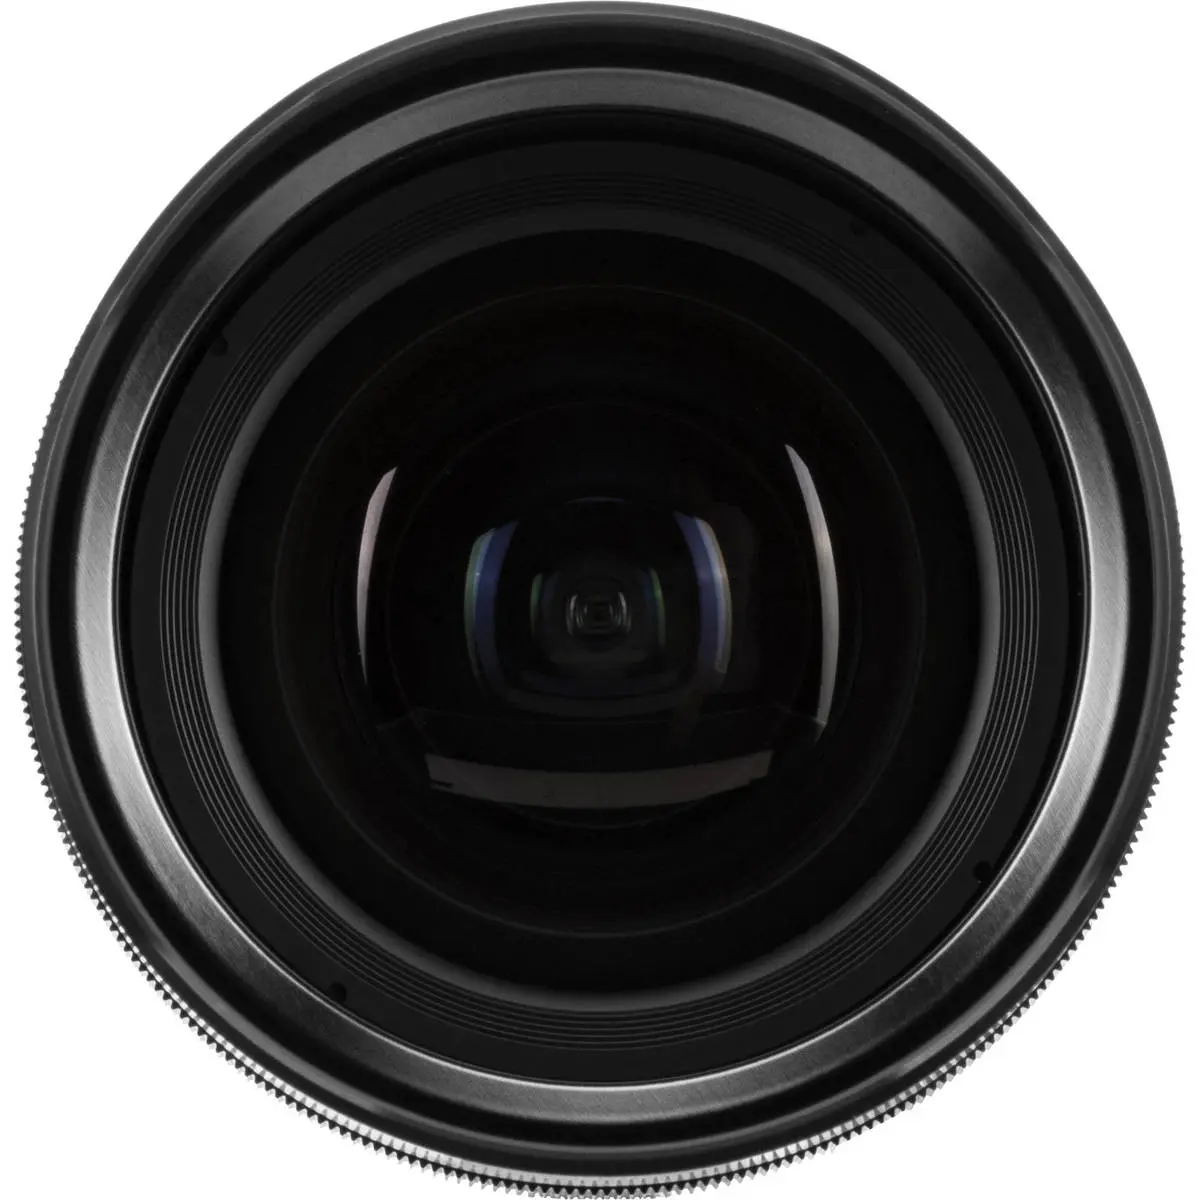 4. Fujifilm FUJINON XF 8-16mm F2.8 R LM WR Lens